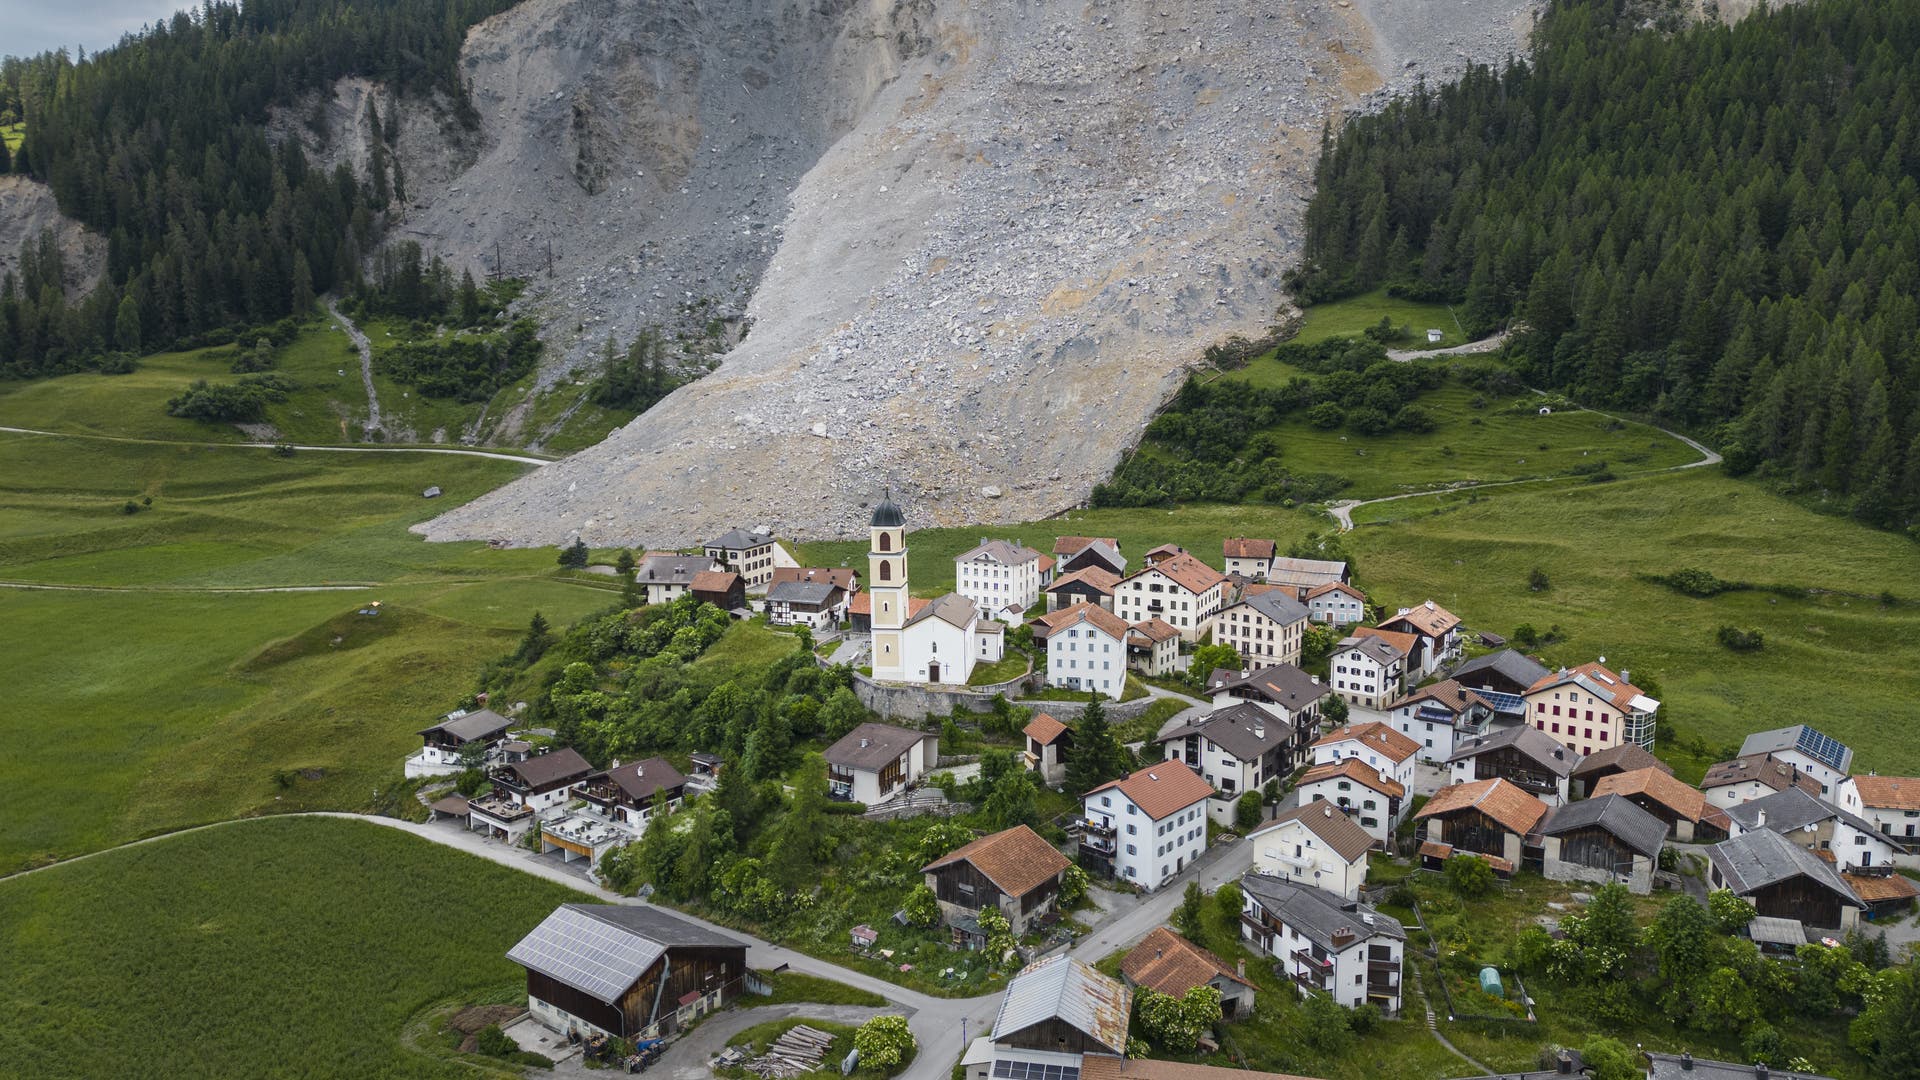 Brienz in Graubünden: the aftermath of the landslide